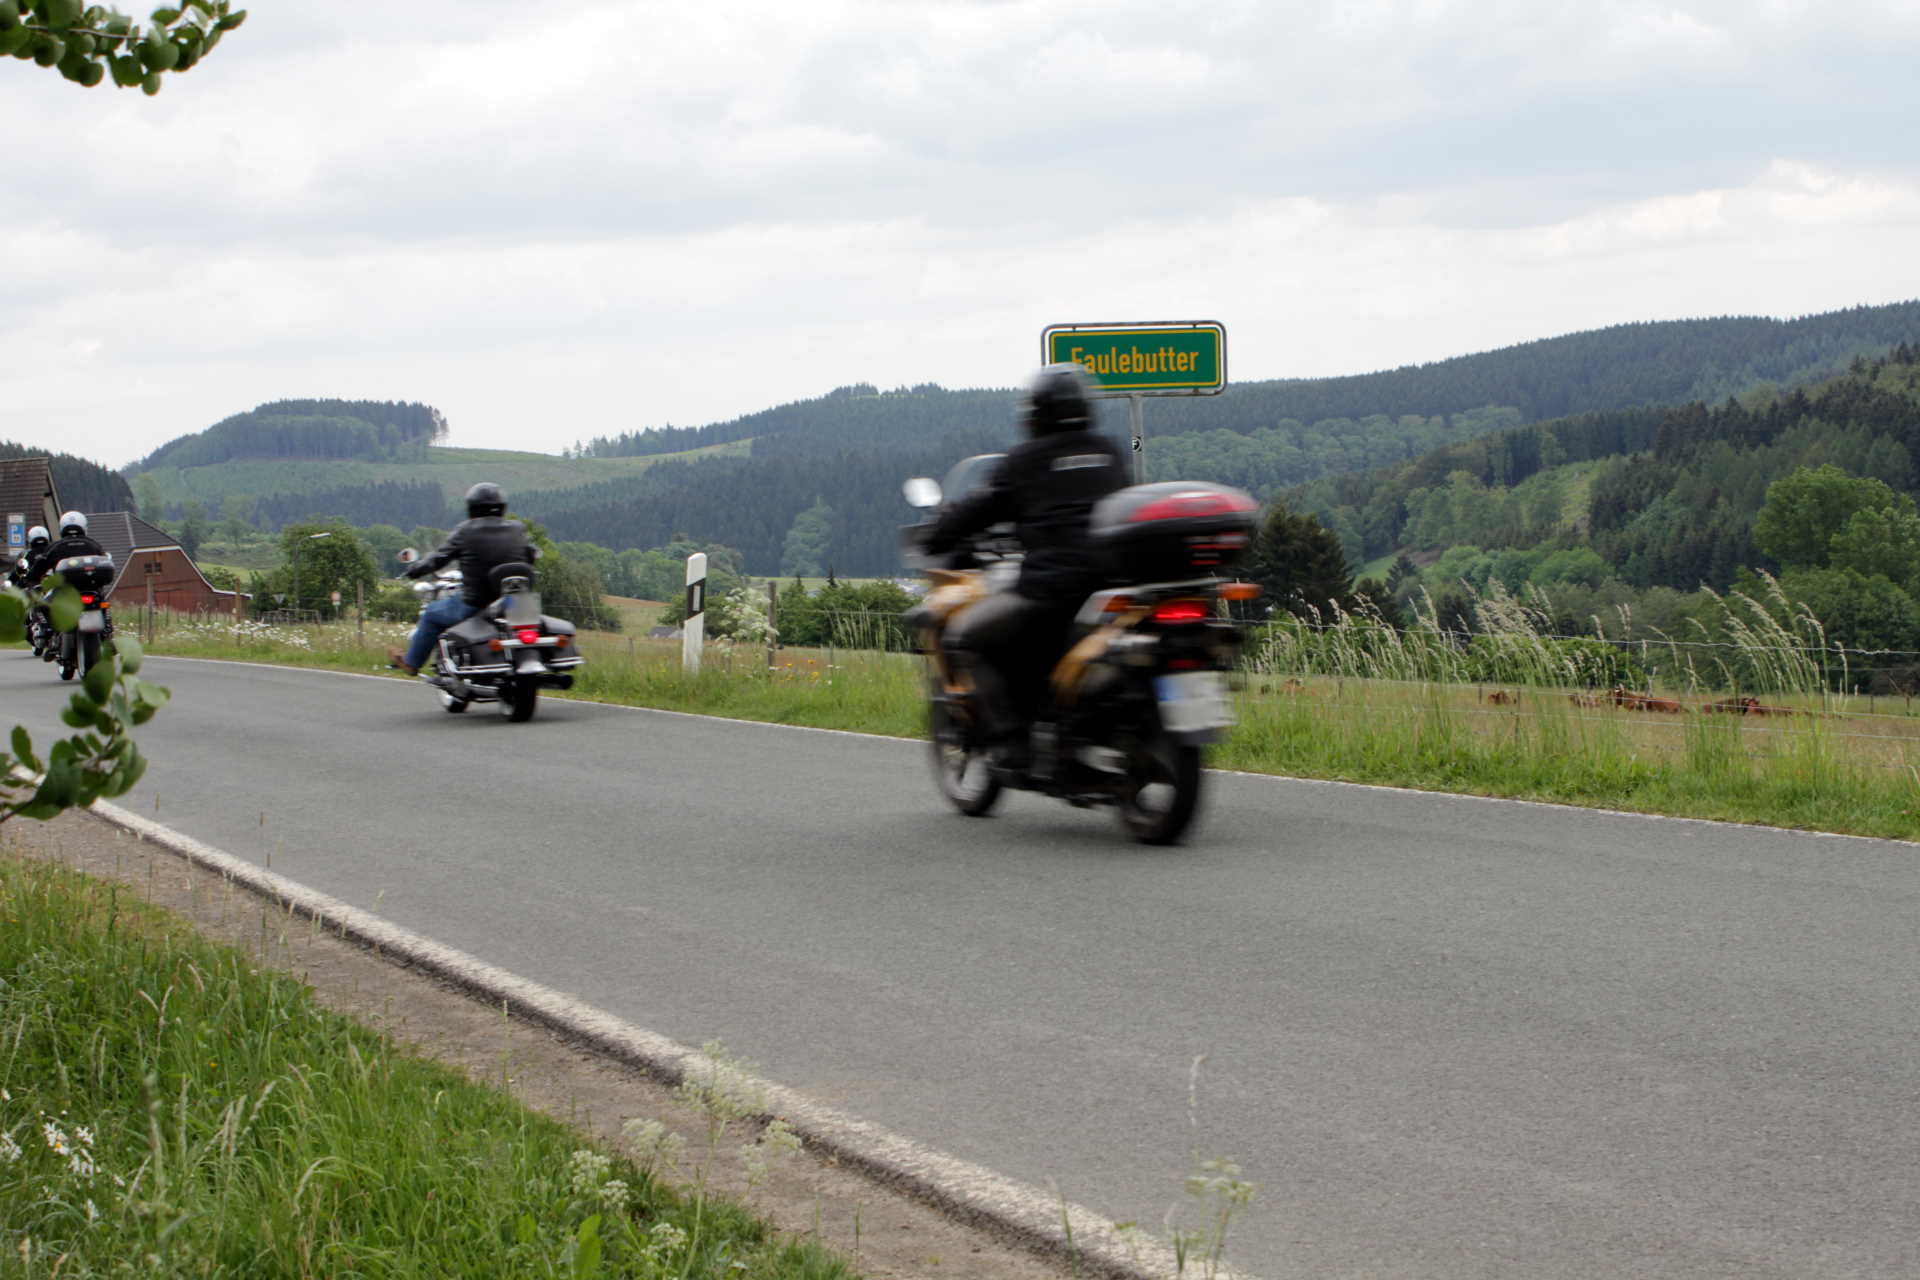 Ausfahrt für einen guten Zweck - Motorradfreunde Kreispolizeibehörde Olpe © Peter Knippers – altais.de